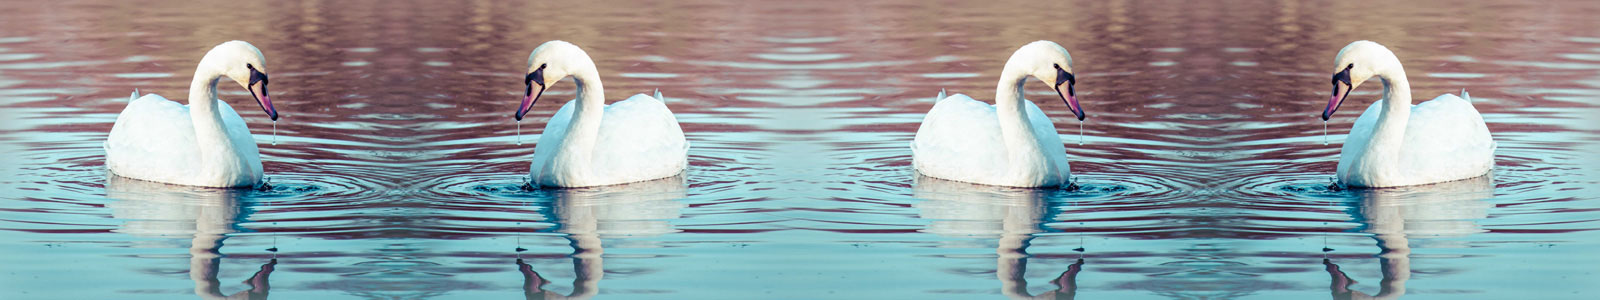 №2807 - Лебеди на озере на закате